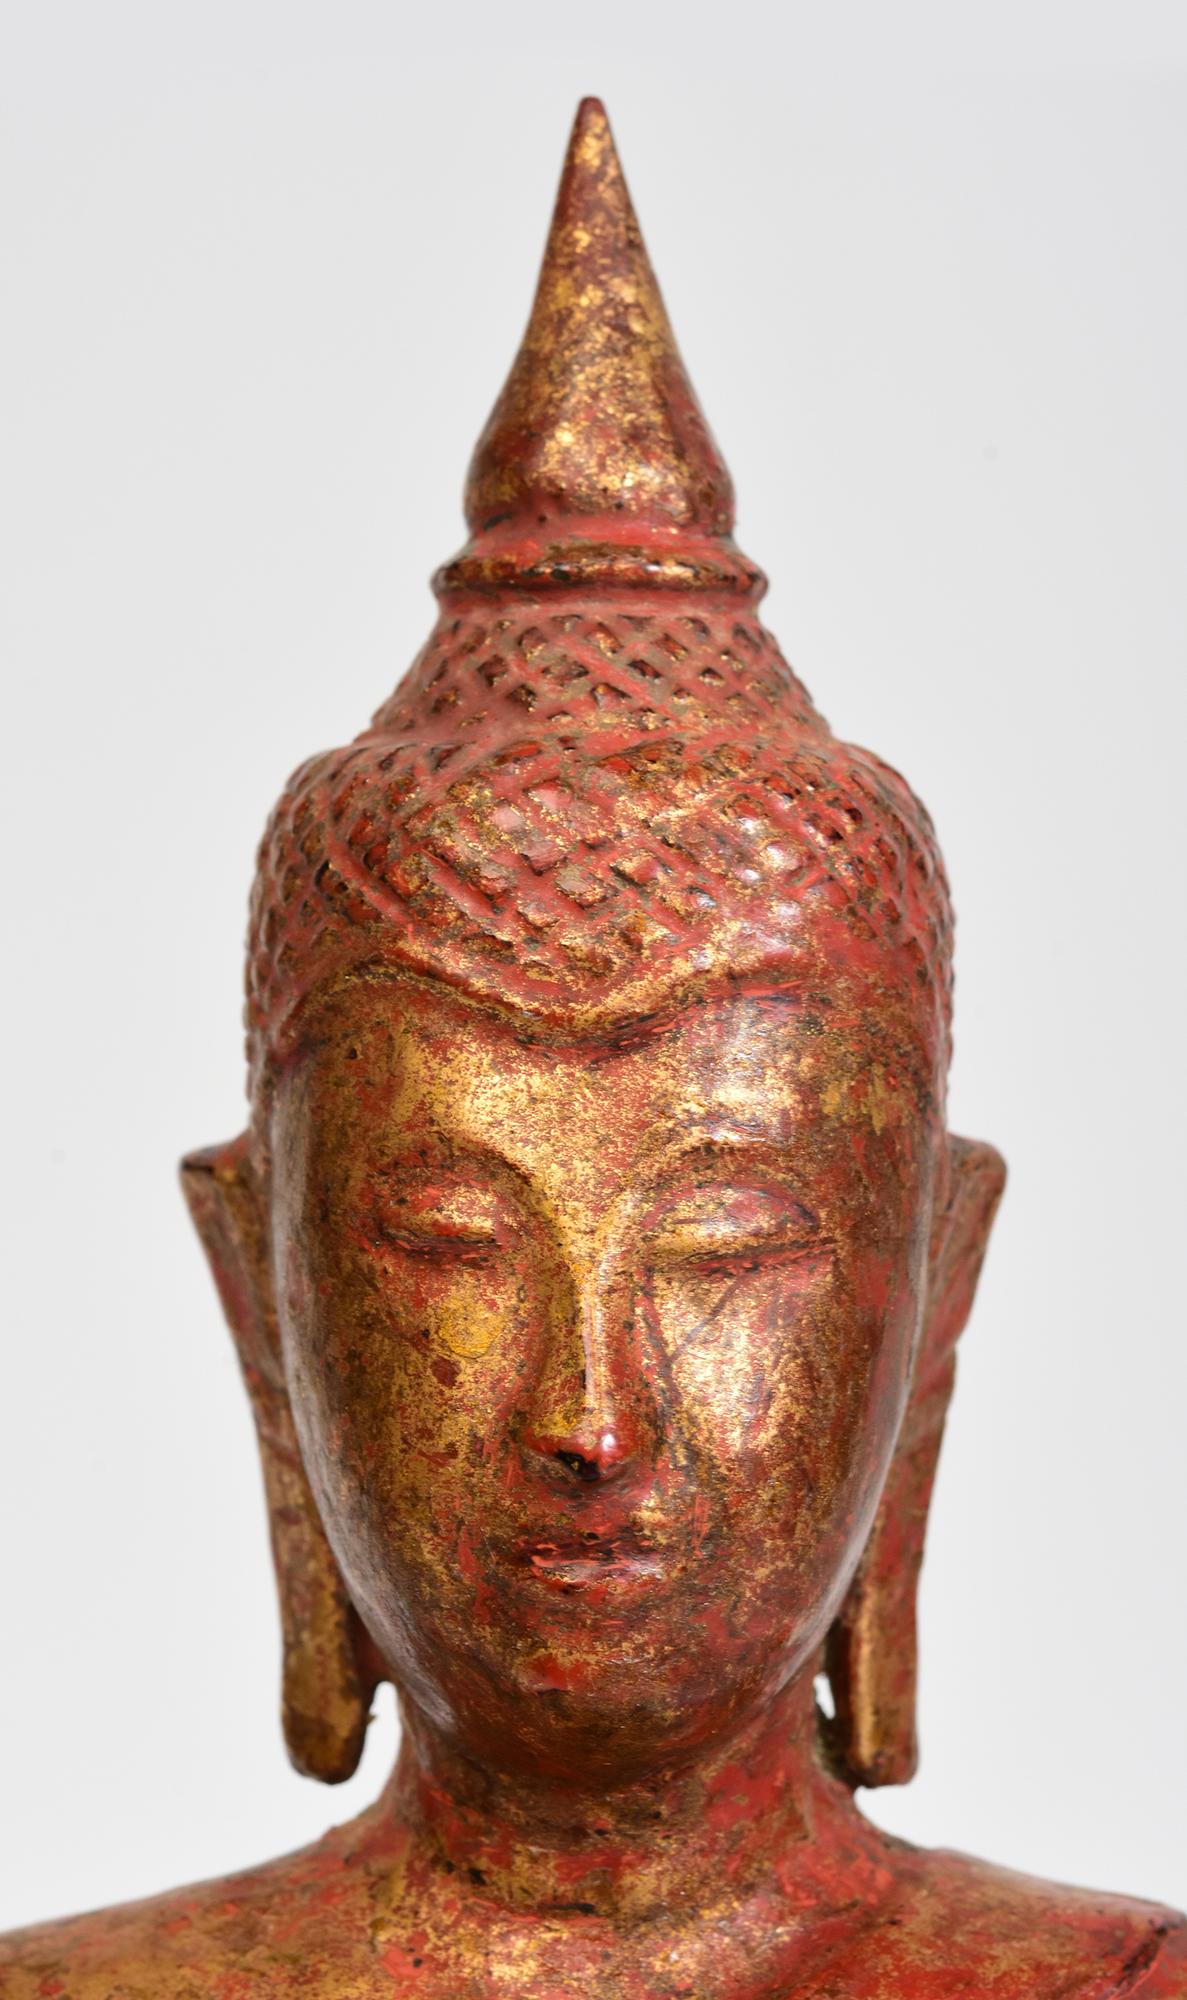 Lanna-Thai-Buddha aus Holz, der in Mara-Vijaya-Haltung (die Erde zum Zeugen rufen) auf einem Sockel sitzt.

Alter: Thailand, 19. Jahrhundert
Größe: Höhe 29,2 C.M. / Breite 11,5 C.M.
Zustand: Insgesamt guter Zustand (einige altersbedingte